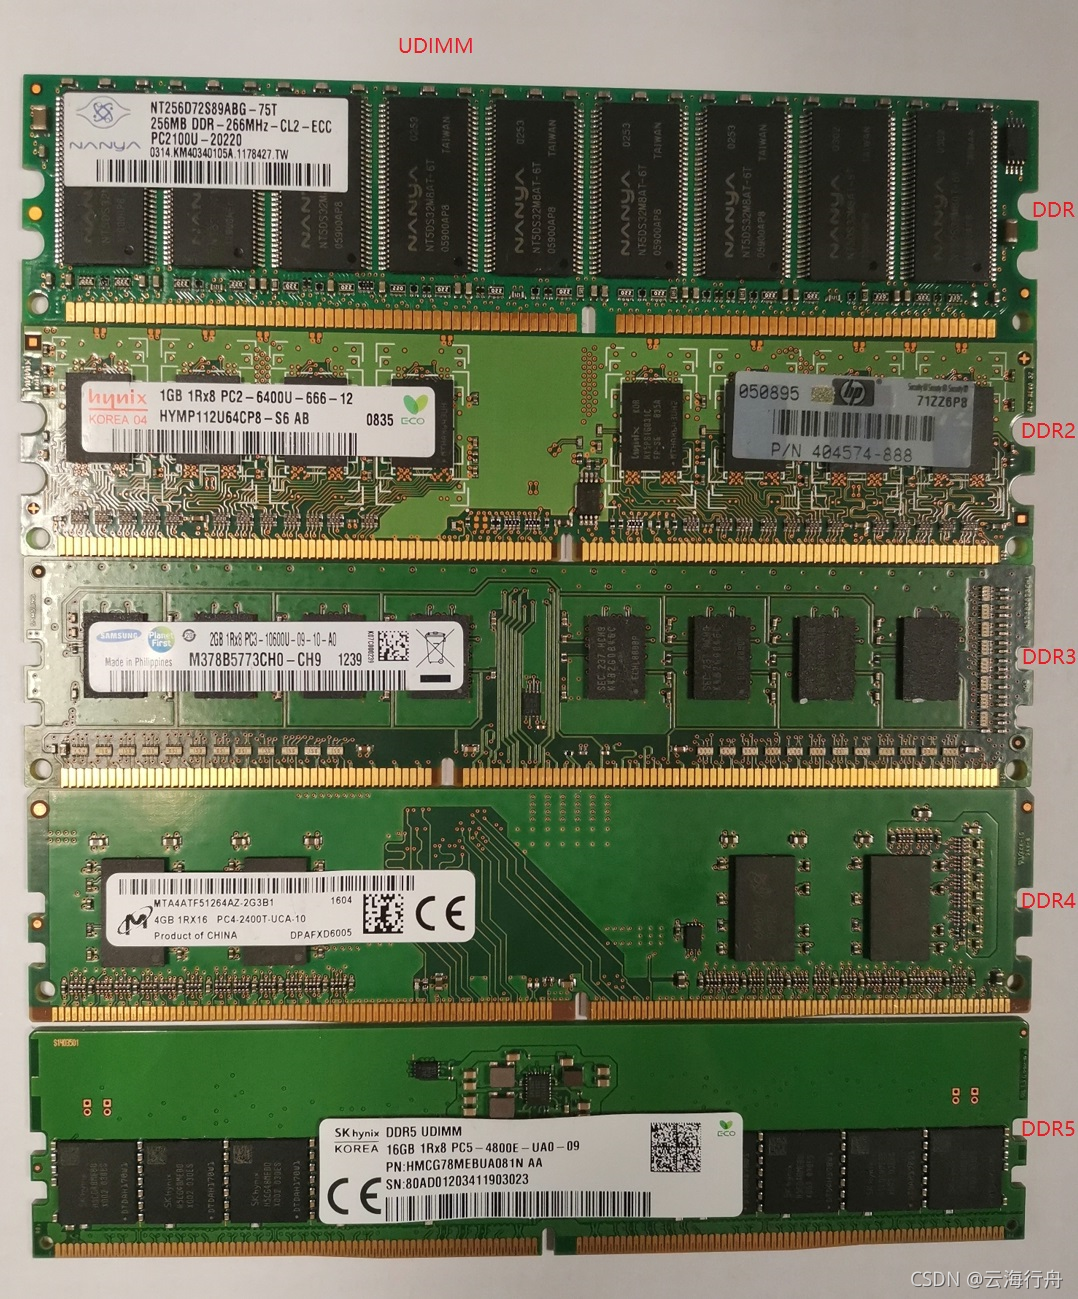 马甲条与 DDR4：电脑内存领域的竞争与依存关系探讨  第6张